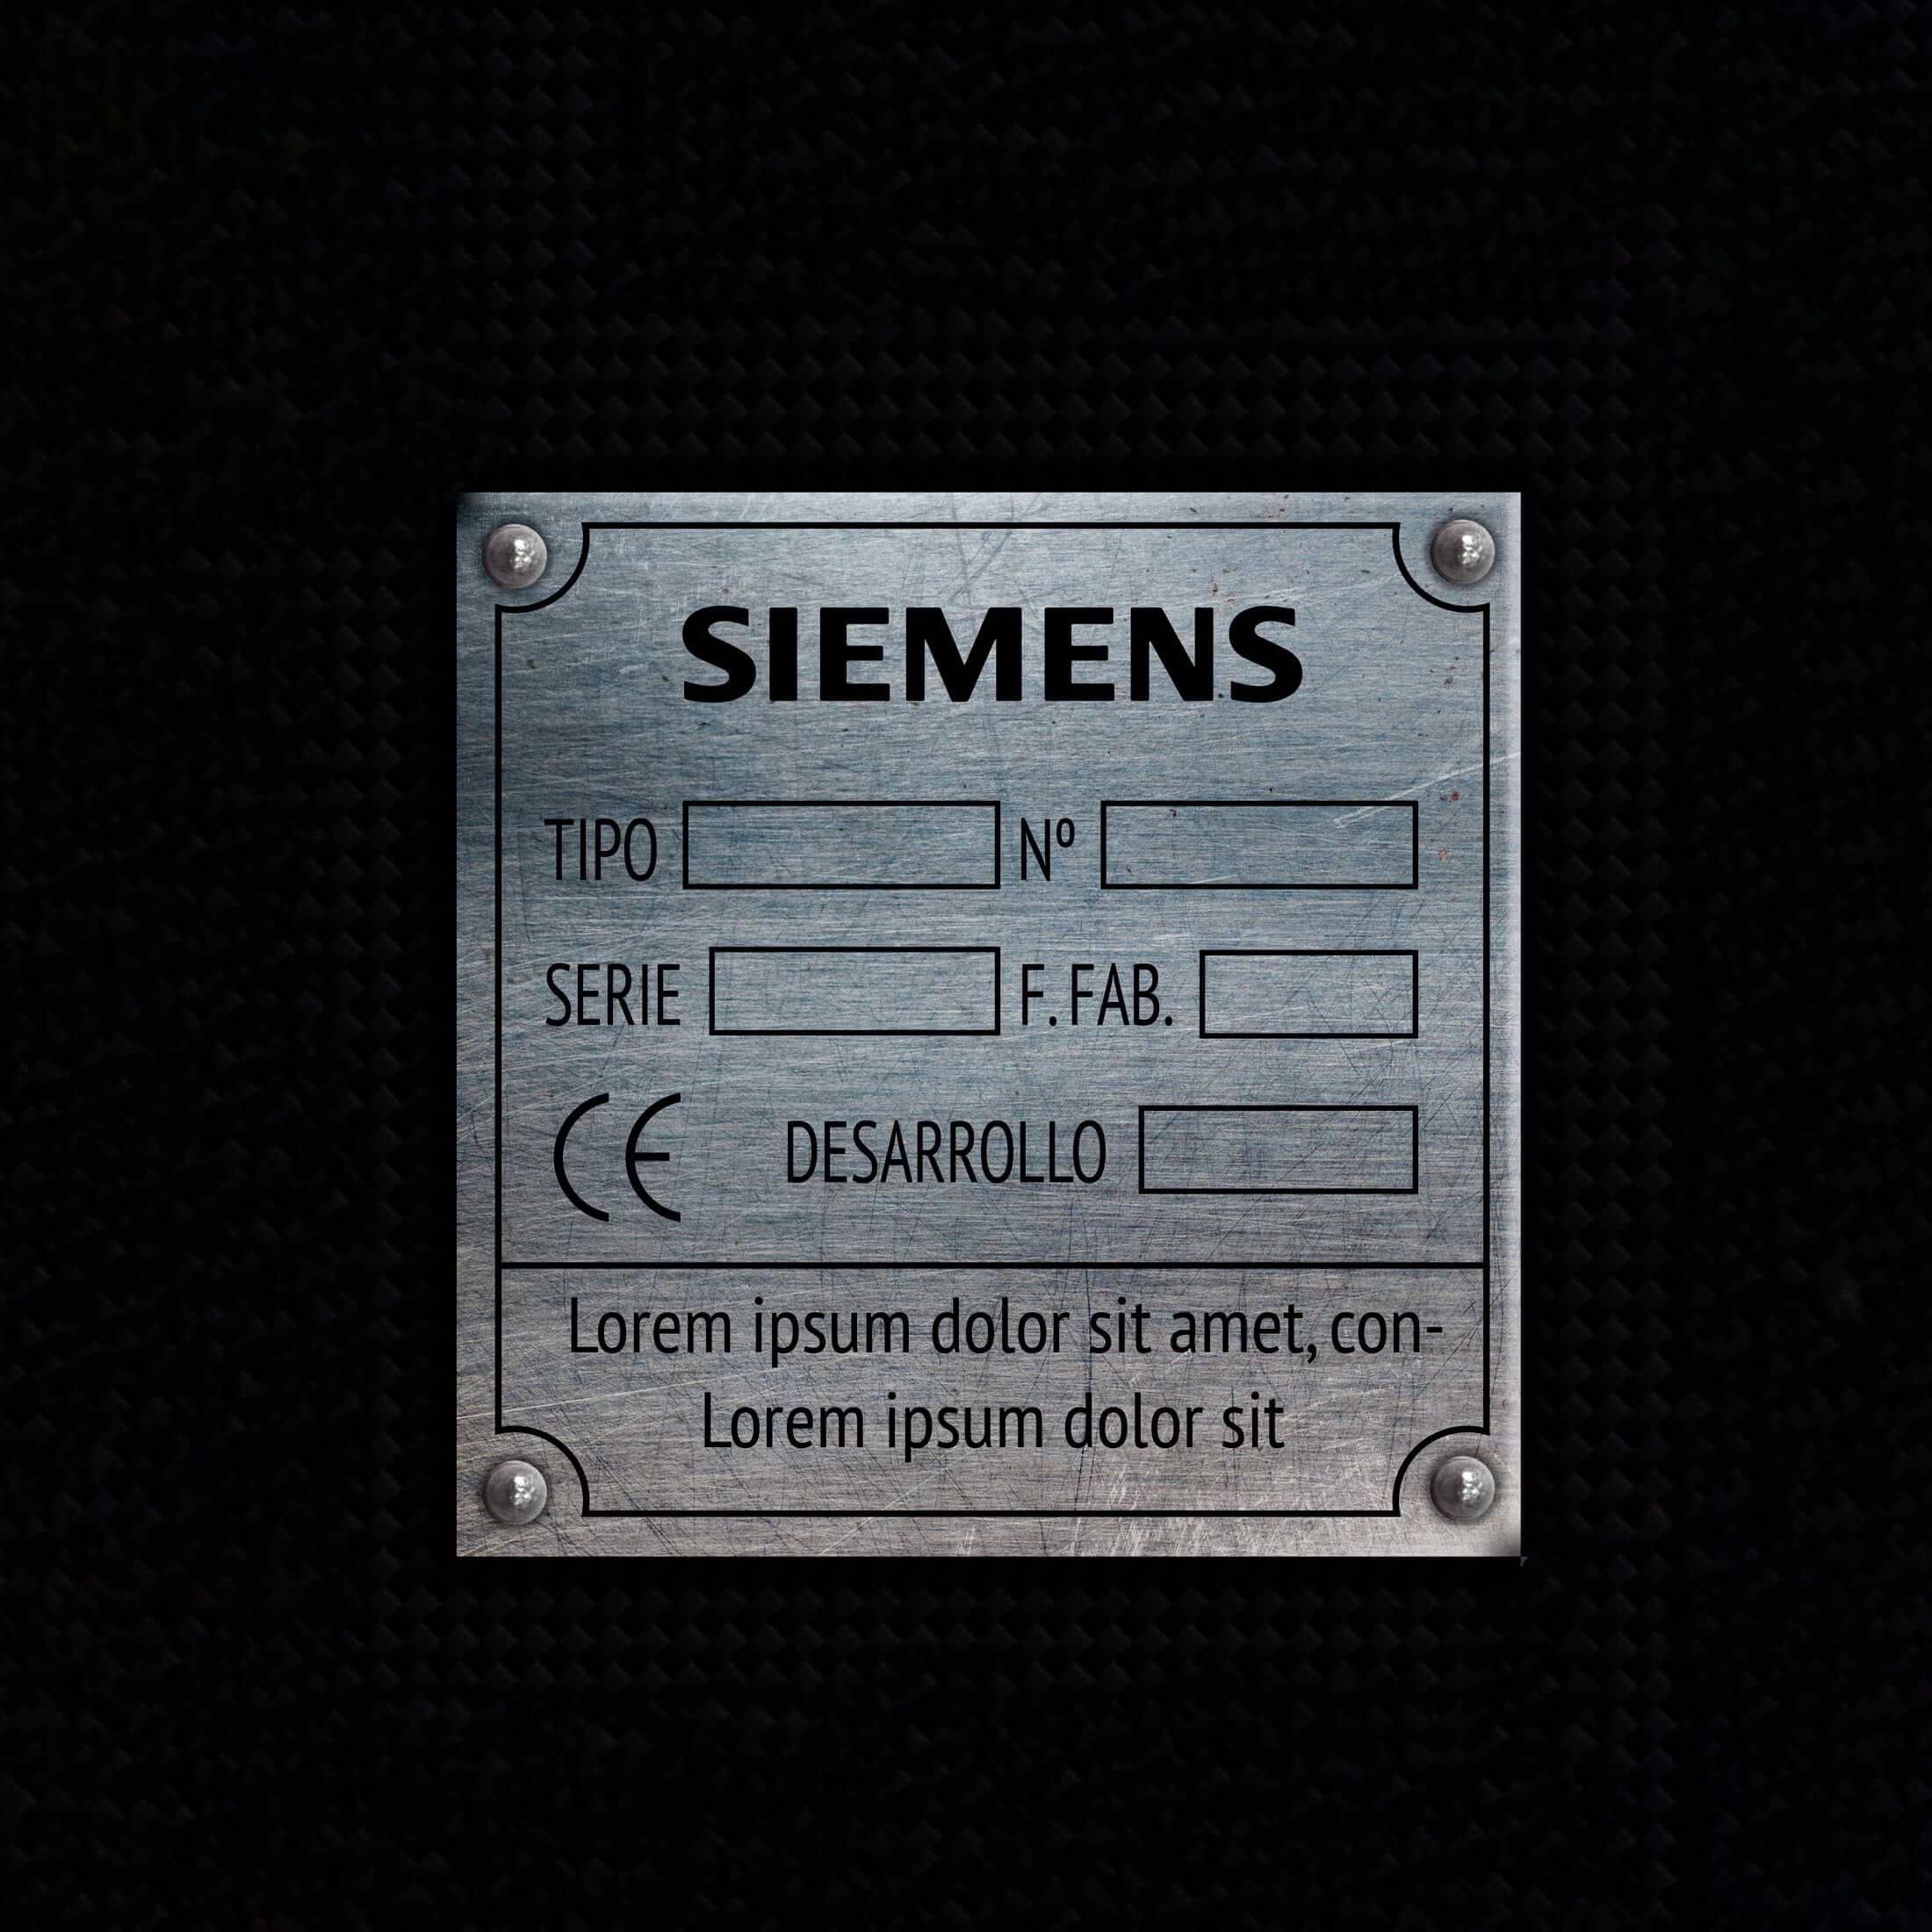 Imagen de la placa de acero de una máquina con la información de la marca, el modelo, el numero de serie y algunos datos tecnicos más de la máquina.